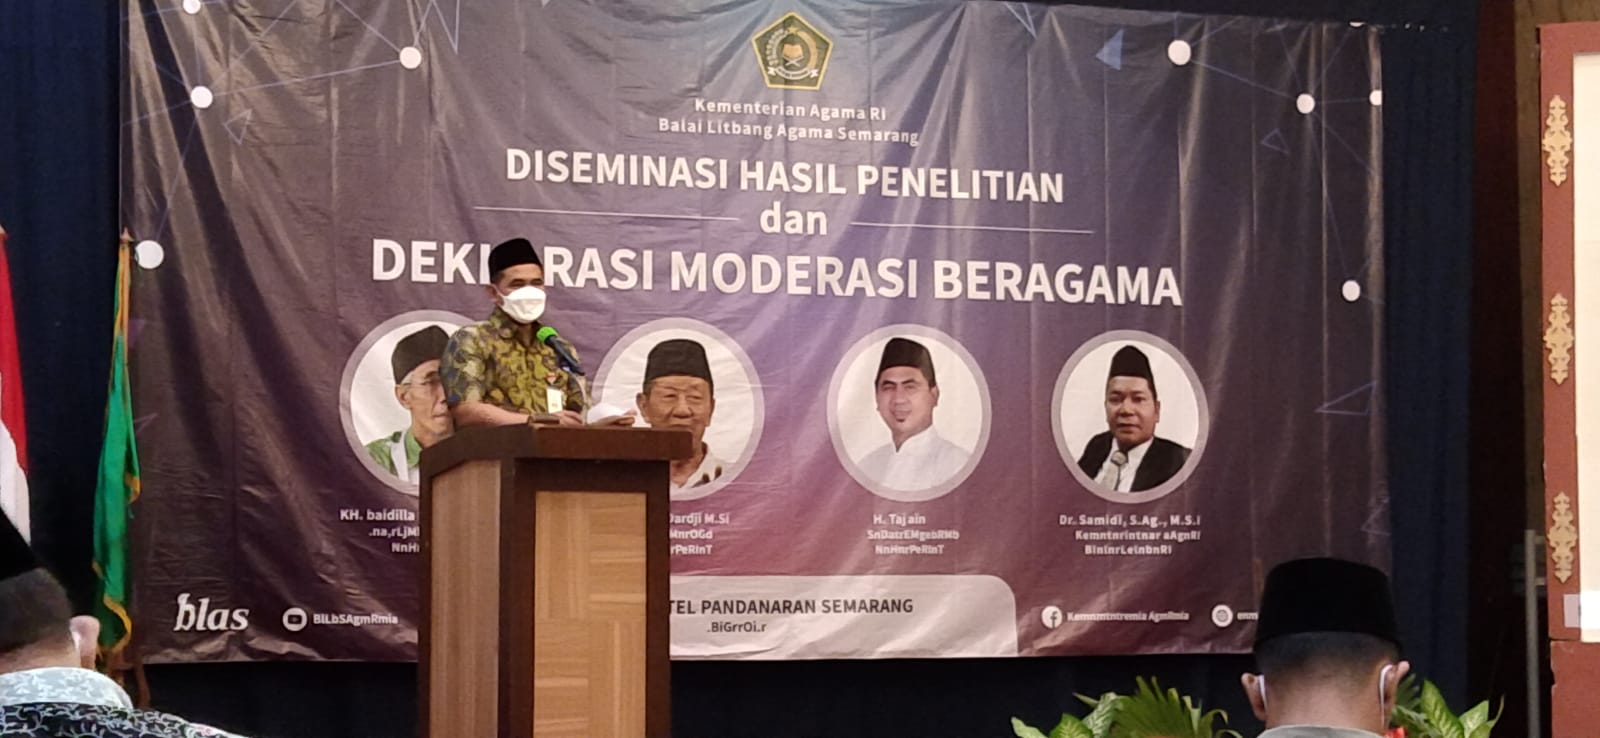 Taj Yasin Maimoen saat menghadiri acara Deklarasi Moderasi Beragama, Tito Isna Utama/Lingkar.co